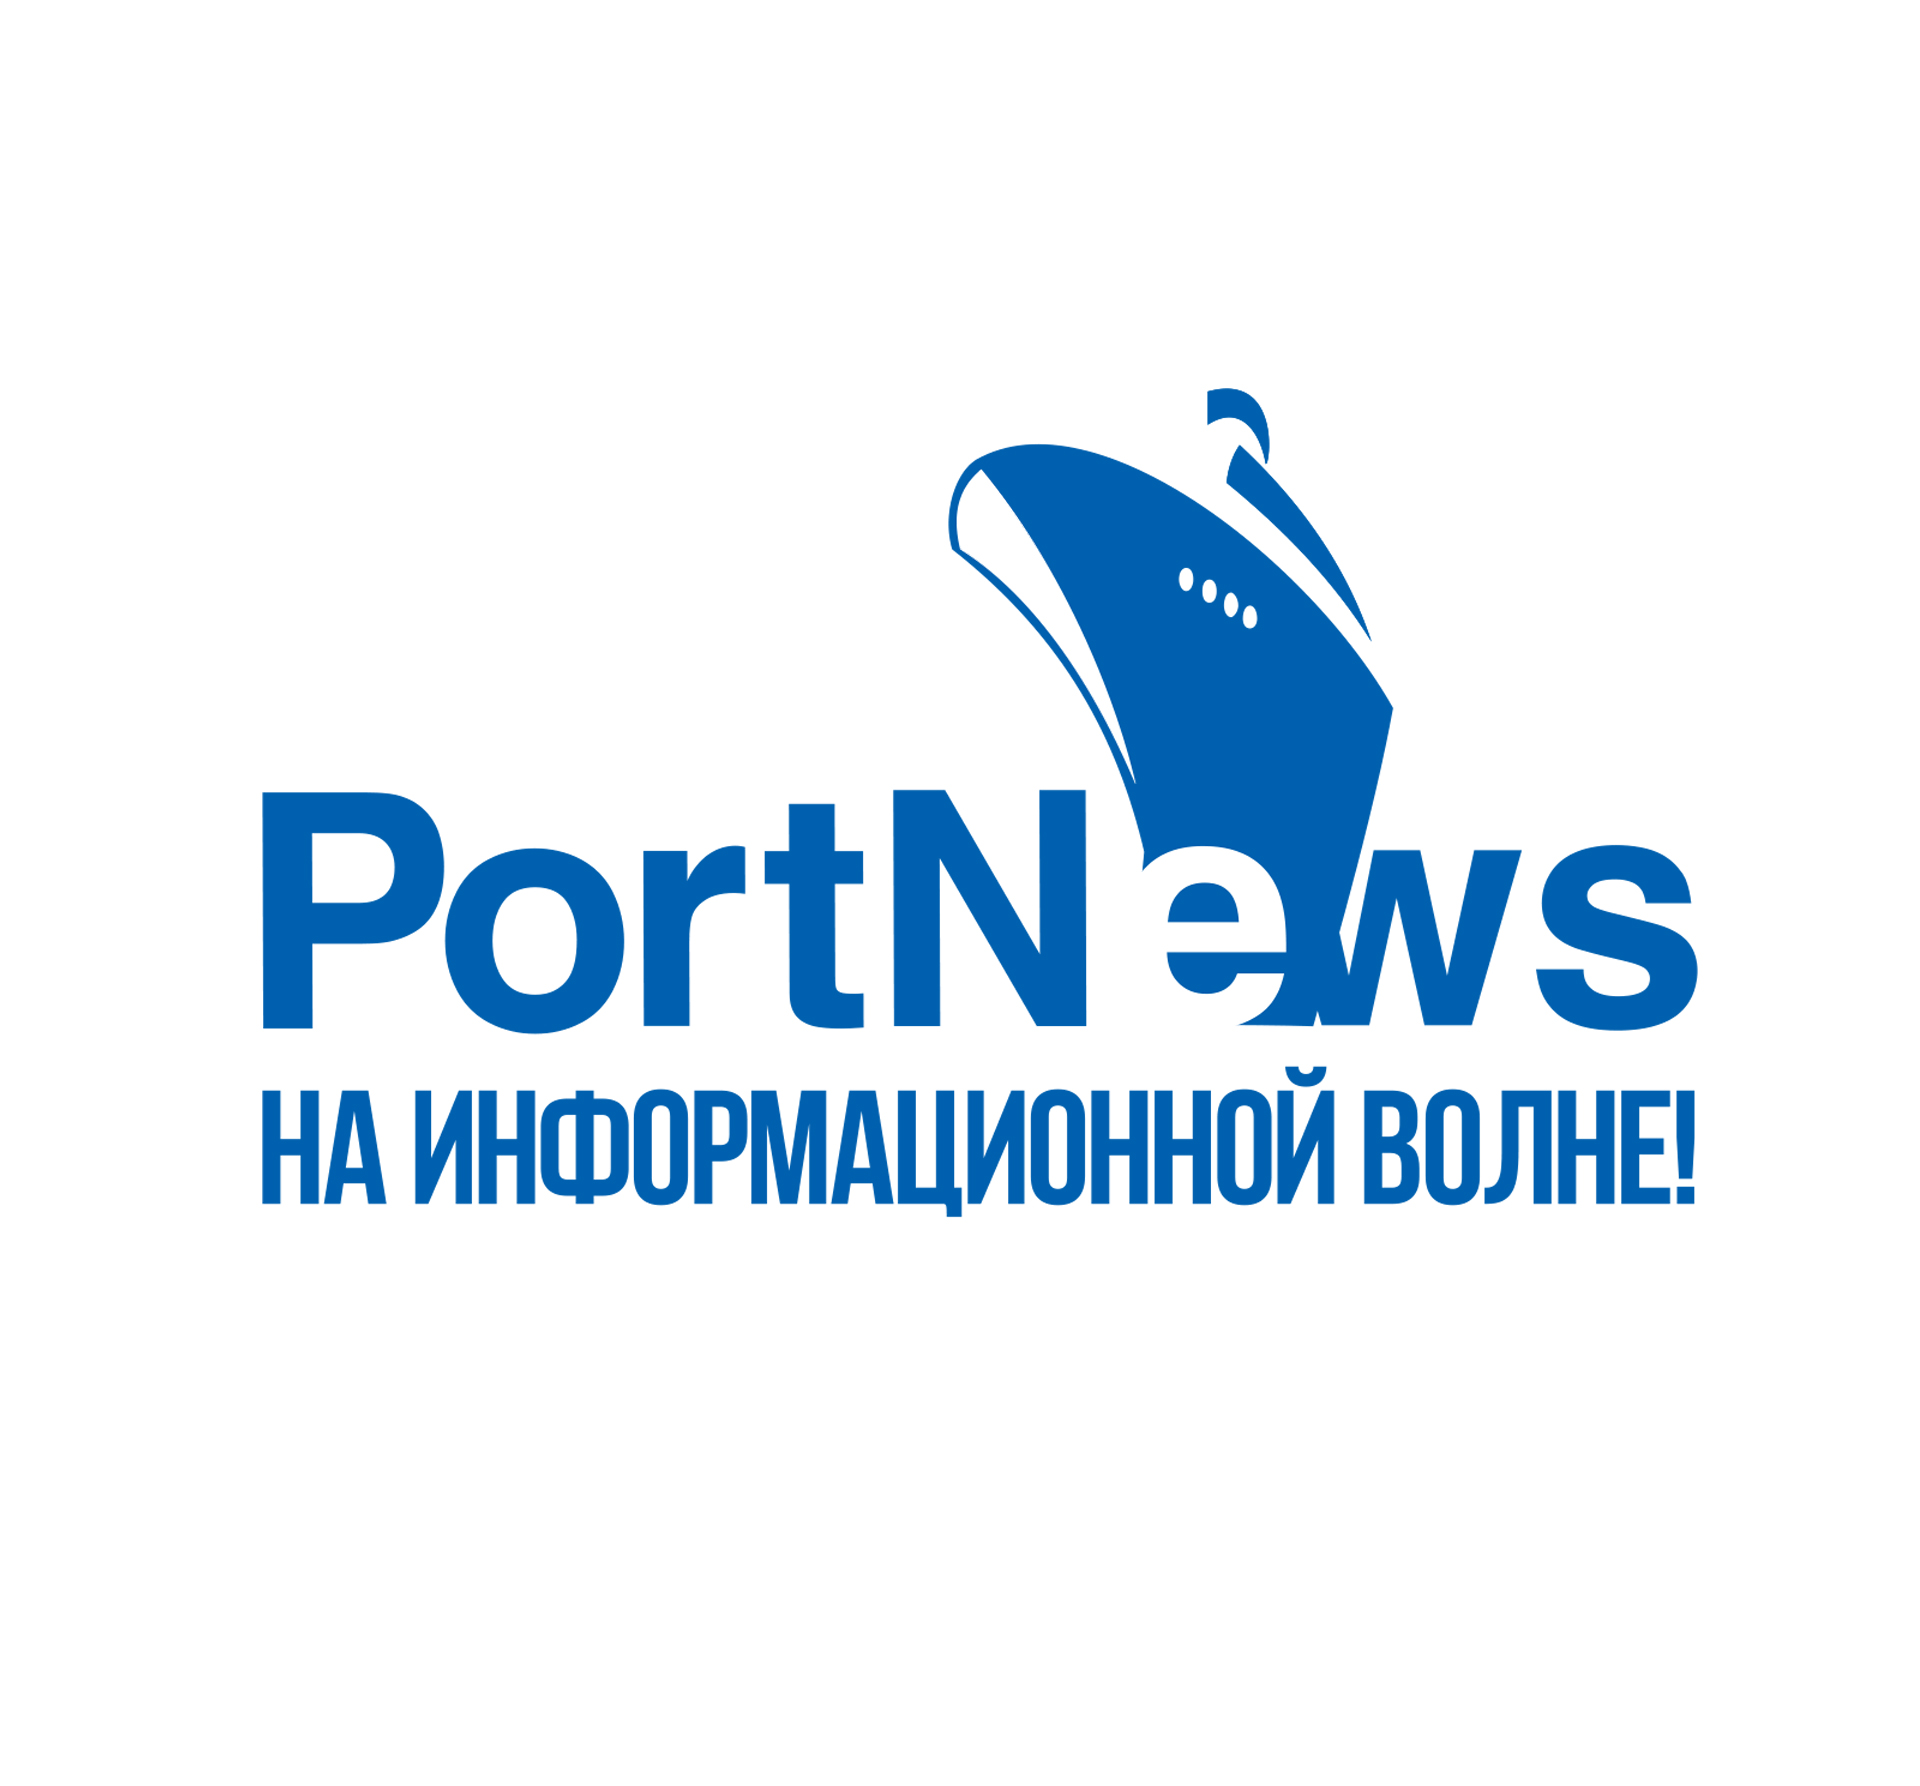 Portnews